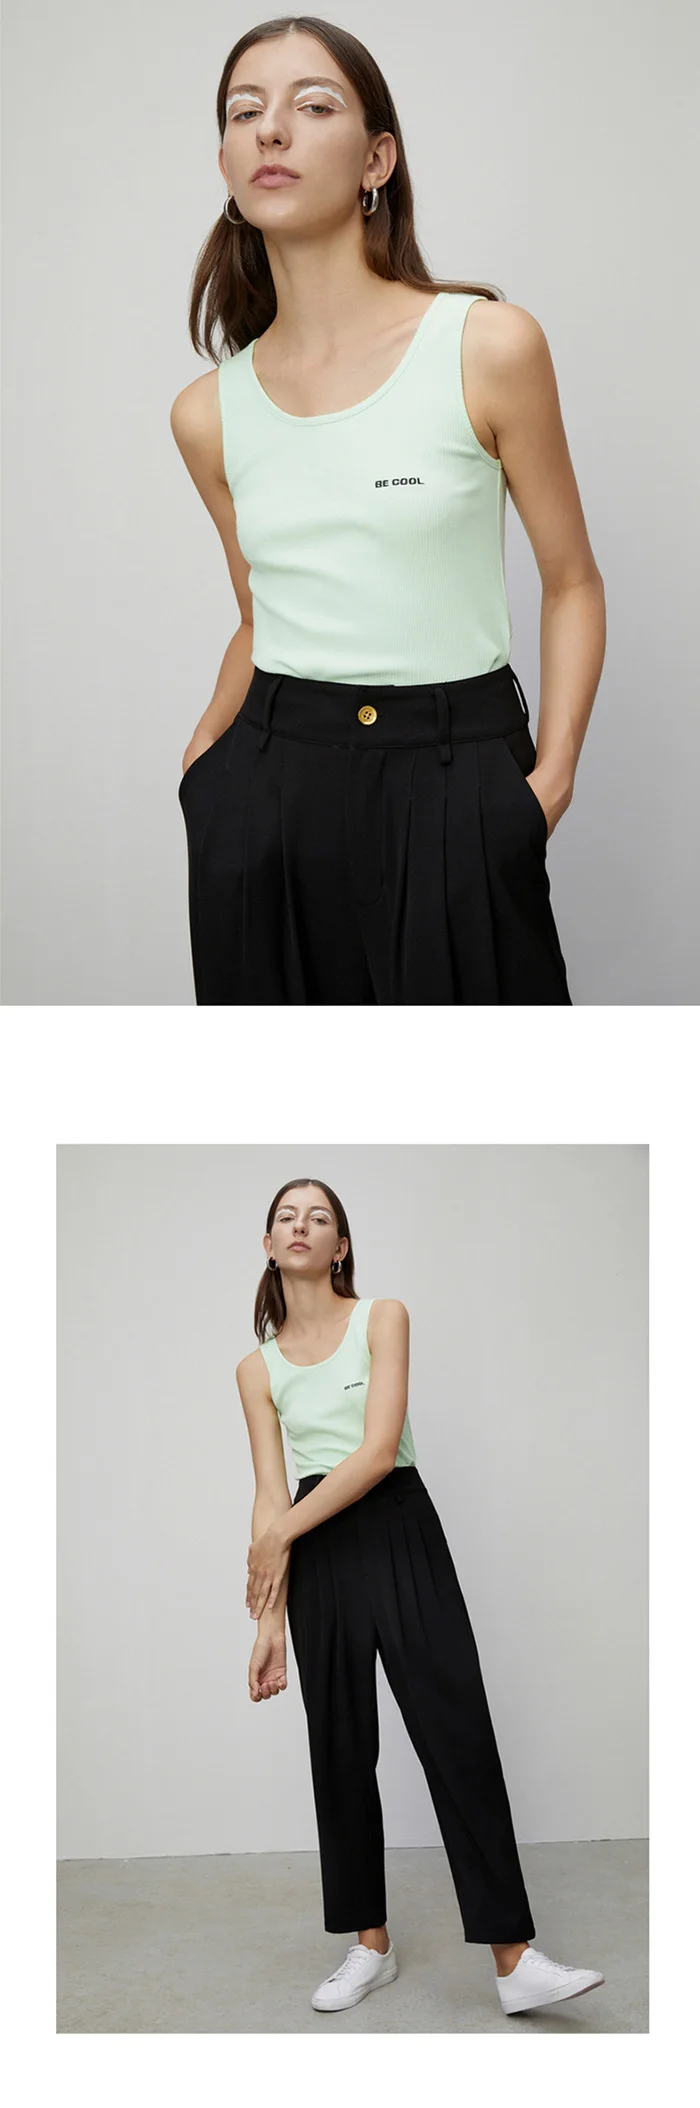 Toyouth женские вышитые майки-топы бочкообразной формы с буквами тонкие облегающие майки новая футболка без рукавов